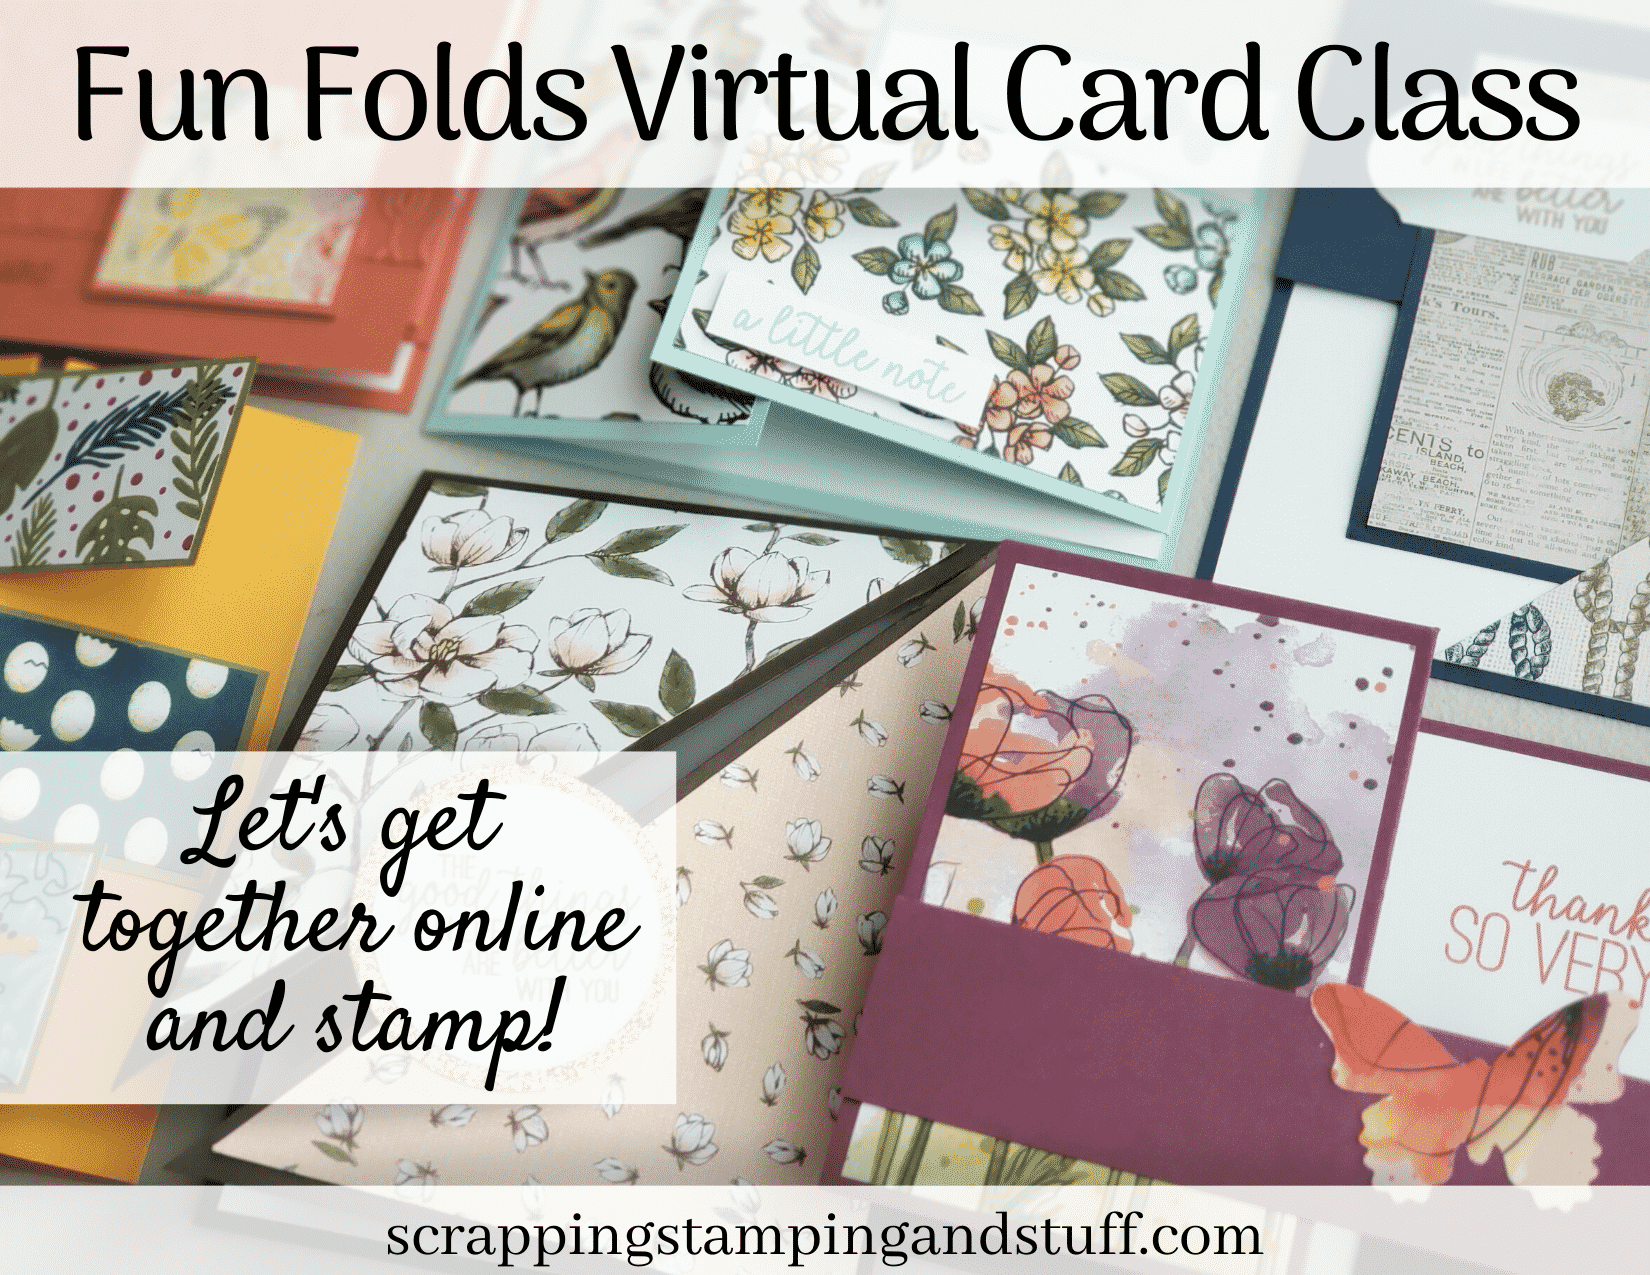 Fun Folds Virtual Card Class – Sign Up Now!